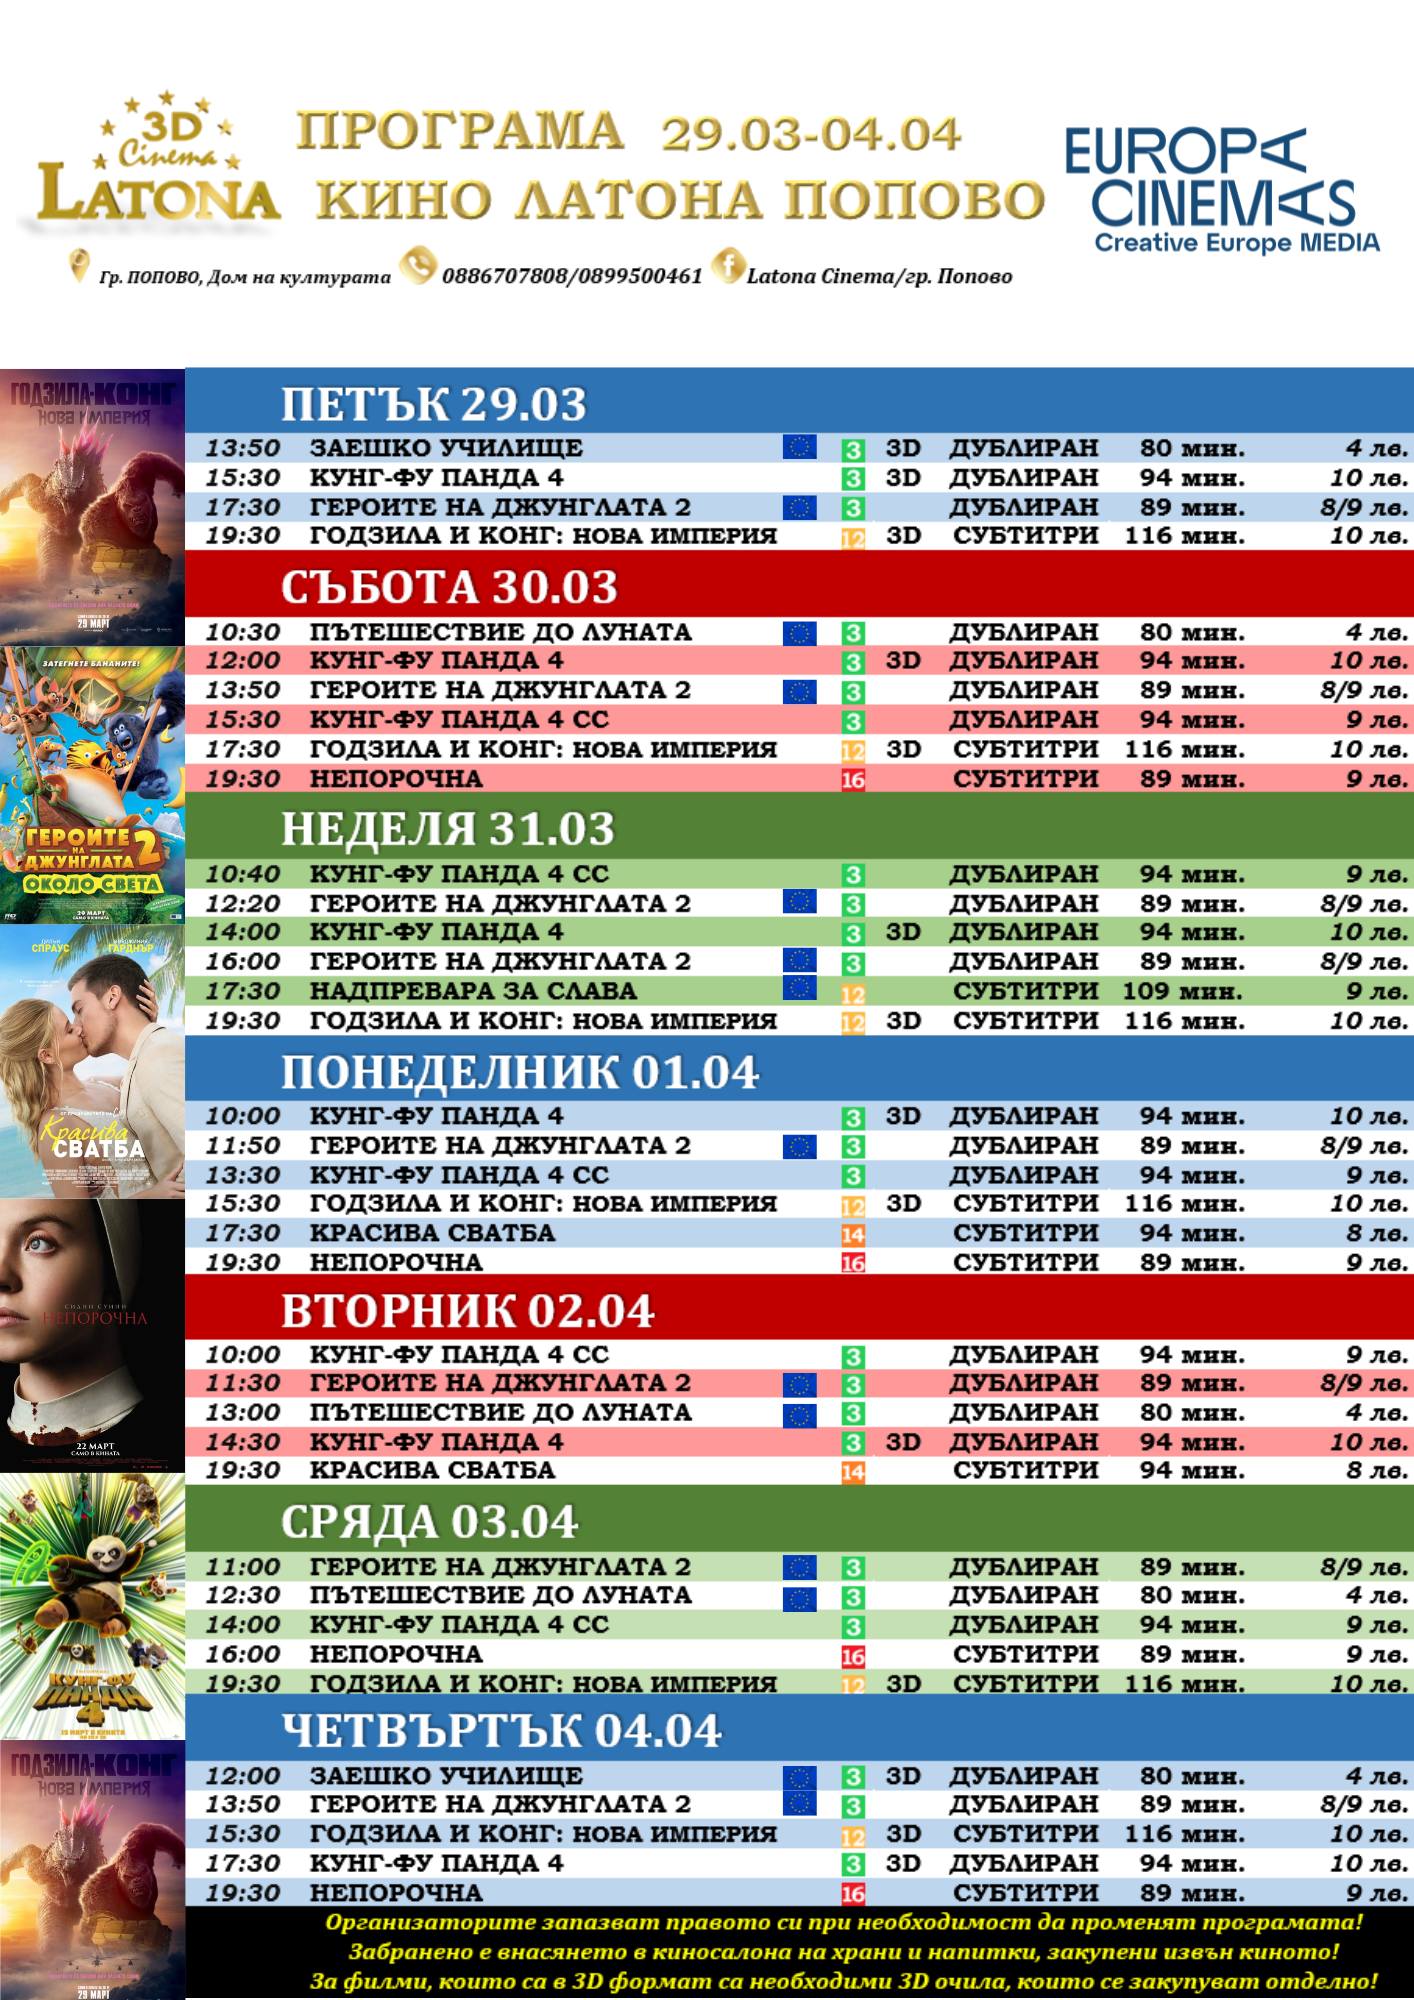 Latona Cinema :      29.03-04.04